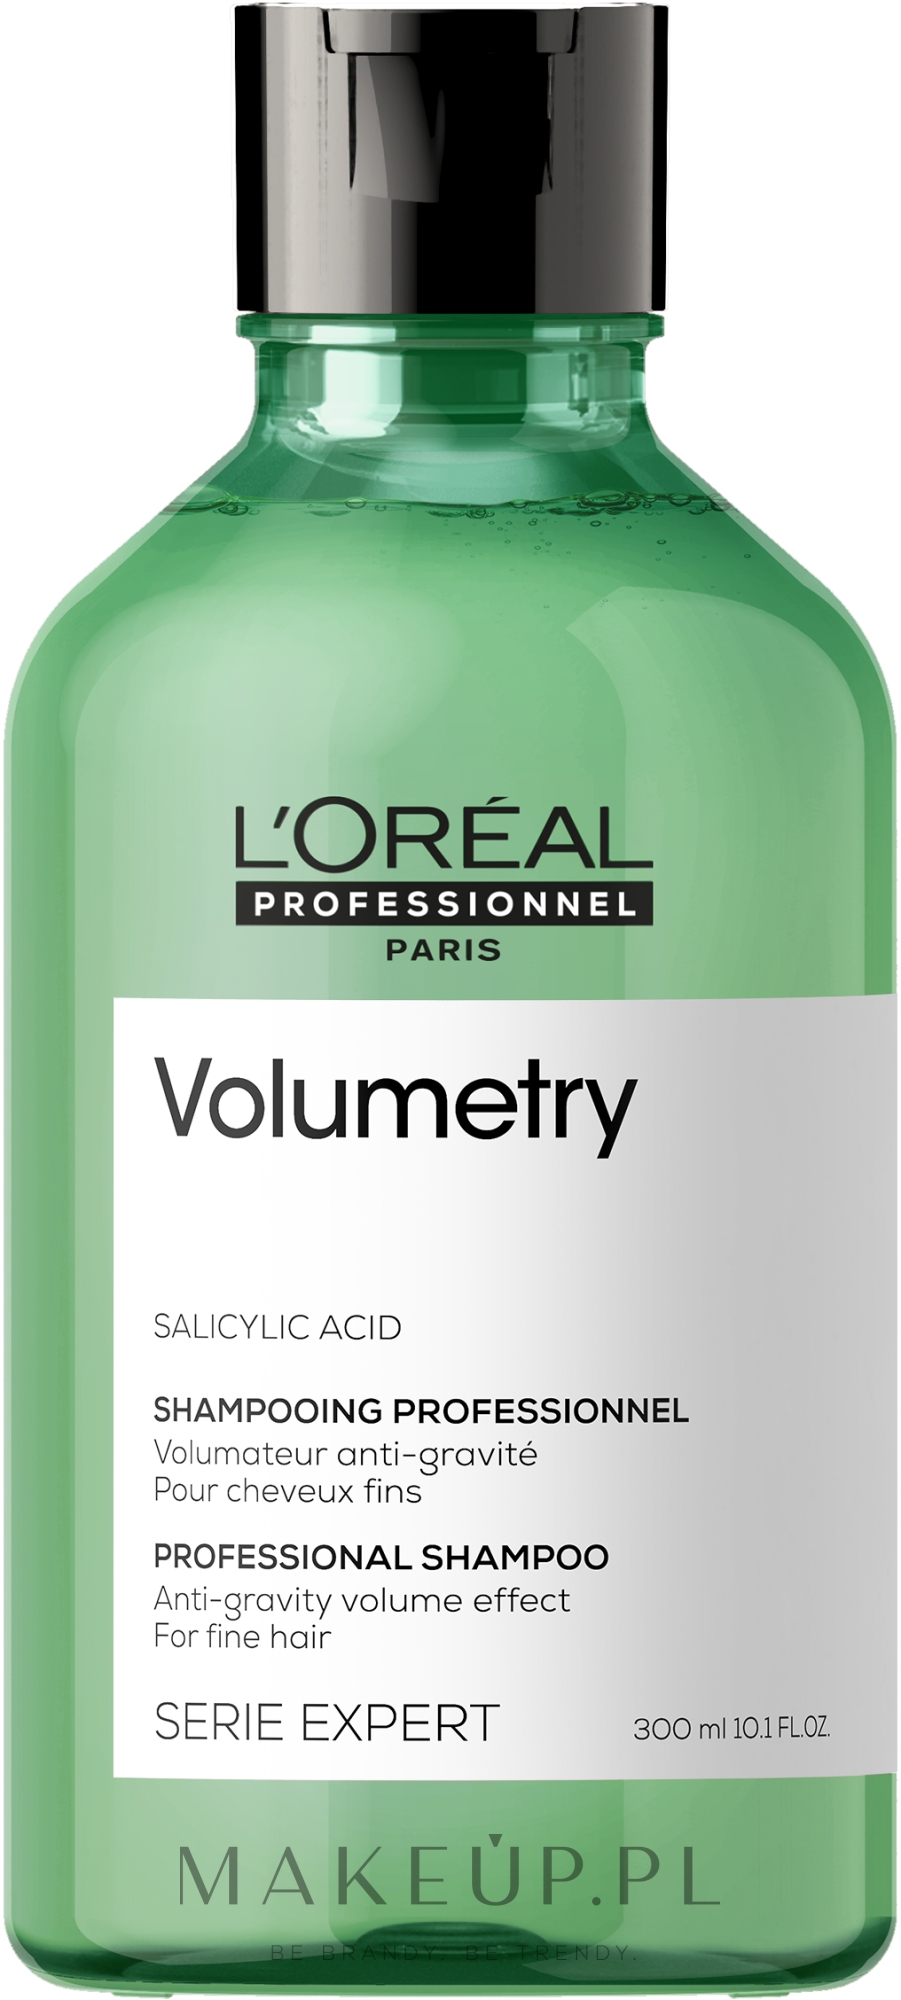 loreal professional try szampon do włosów zwiększający objętość